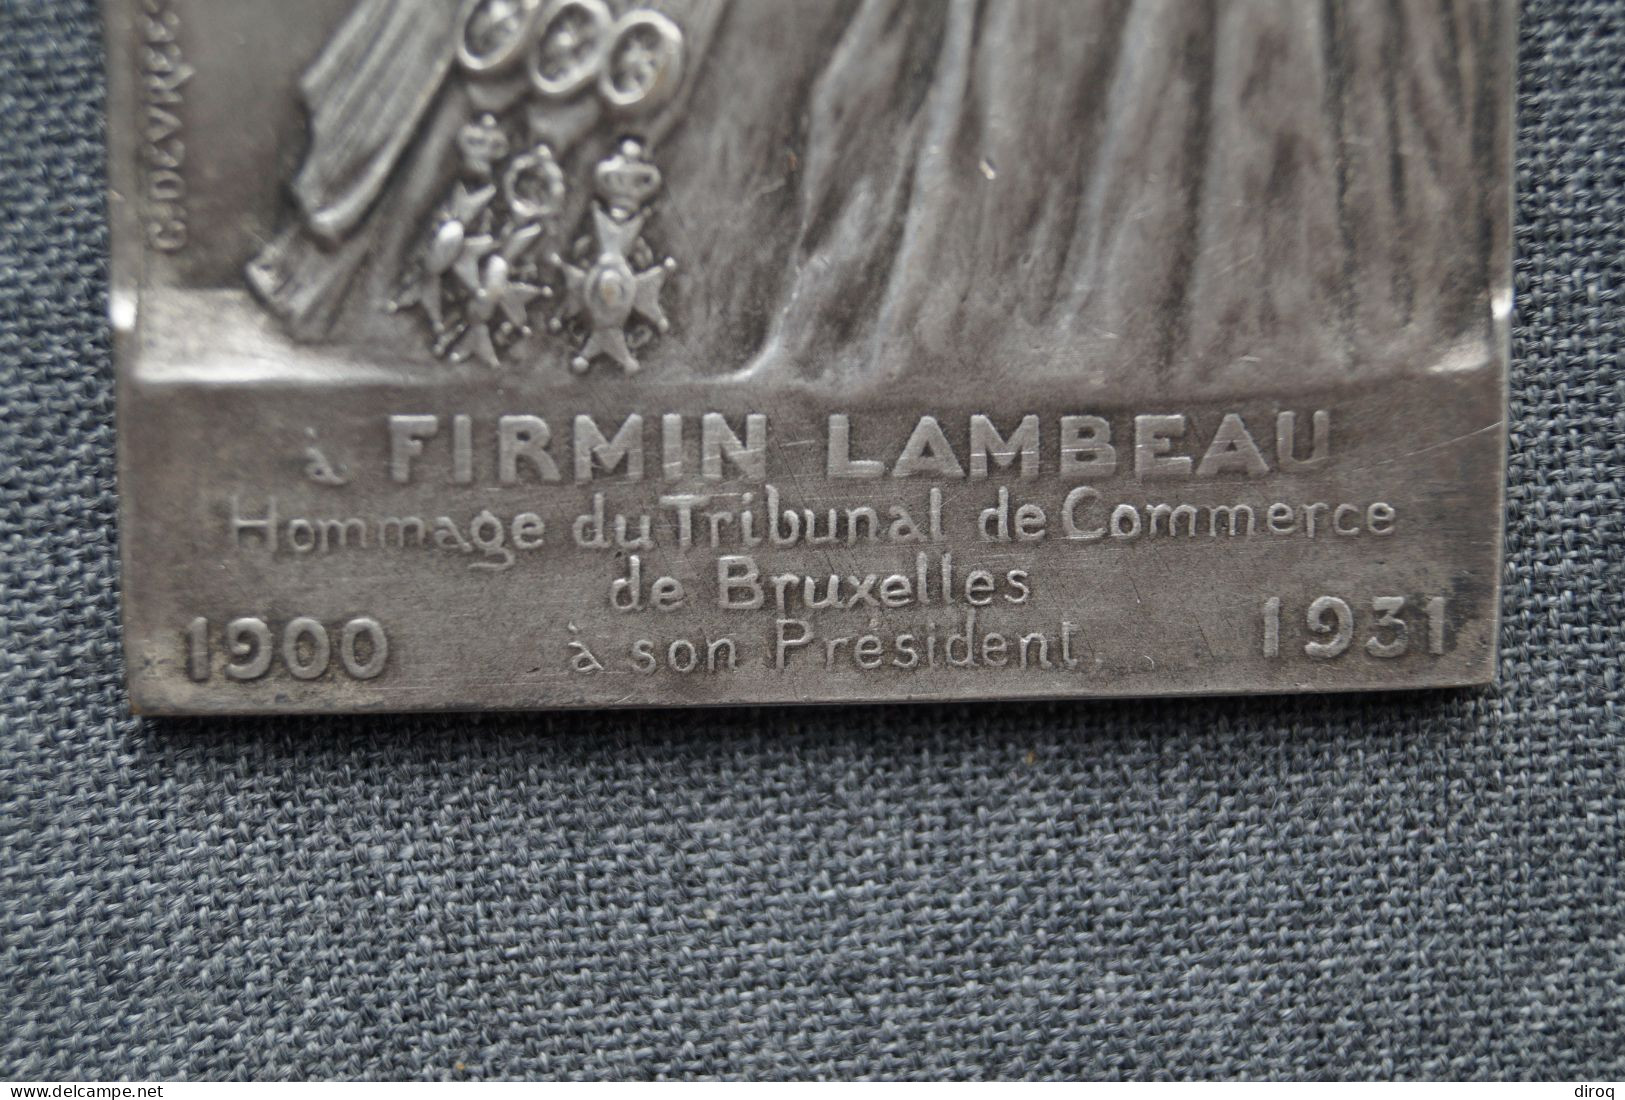 Ancien Bronze,tribunal De Commerce De Bruxelles,1900-1931,à Firmin Lambeau,85 Mm./53 Mm. - Bronces